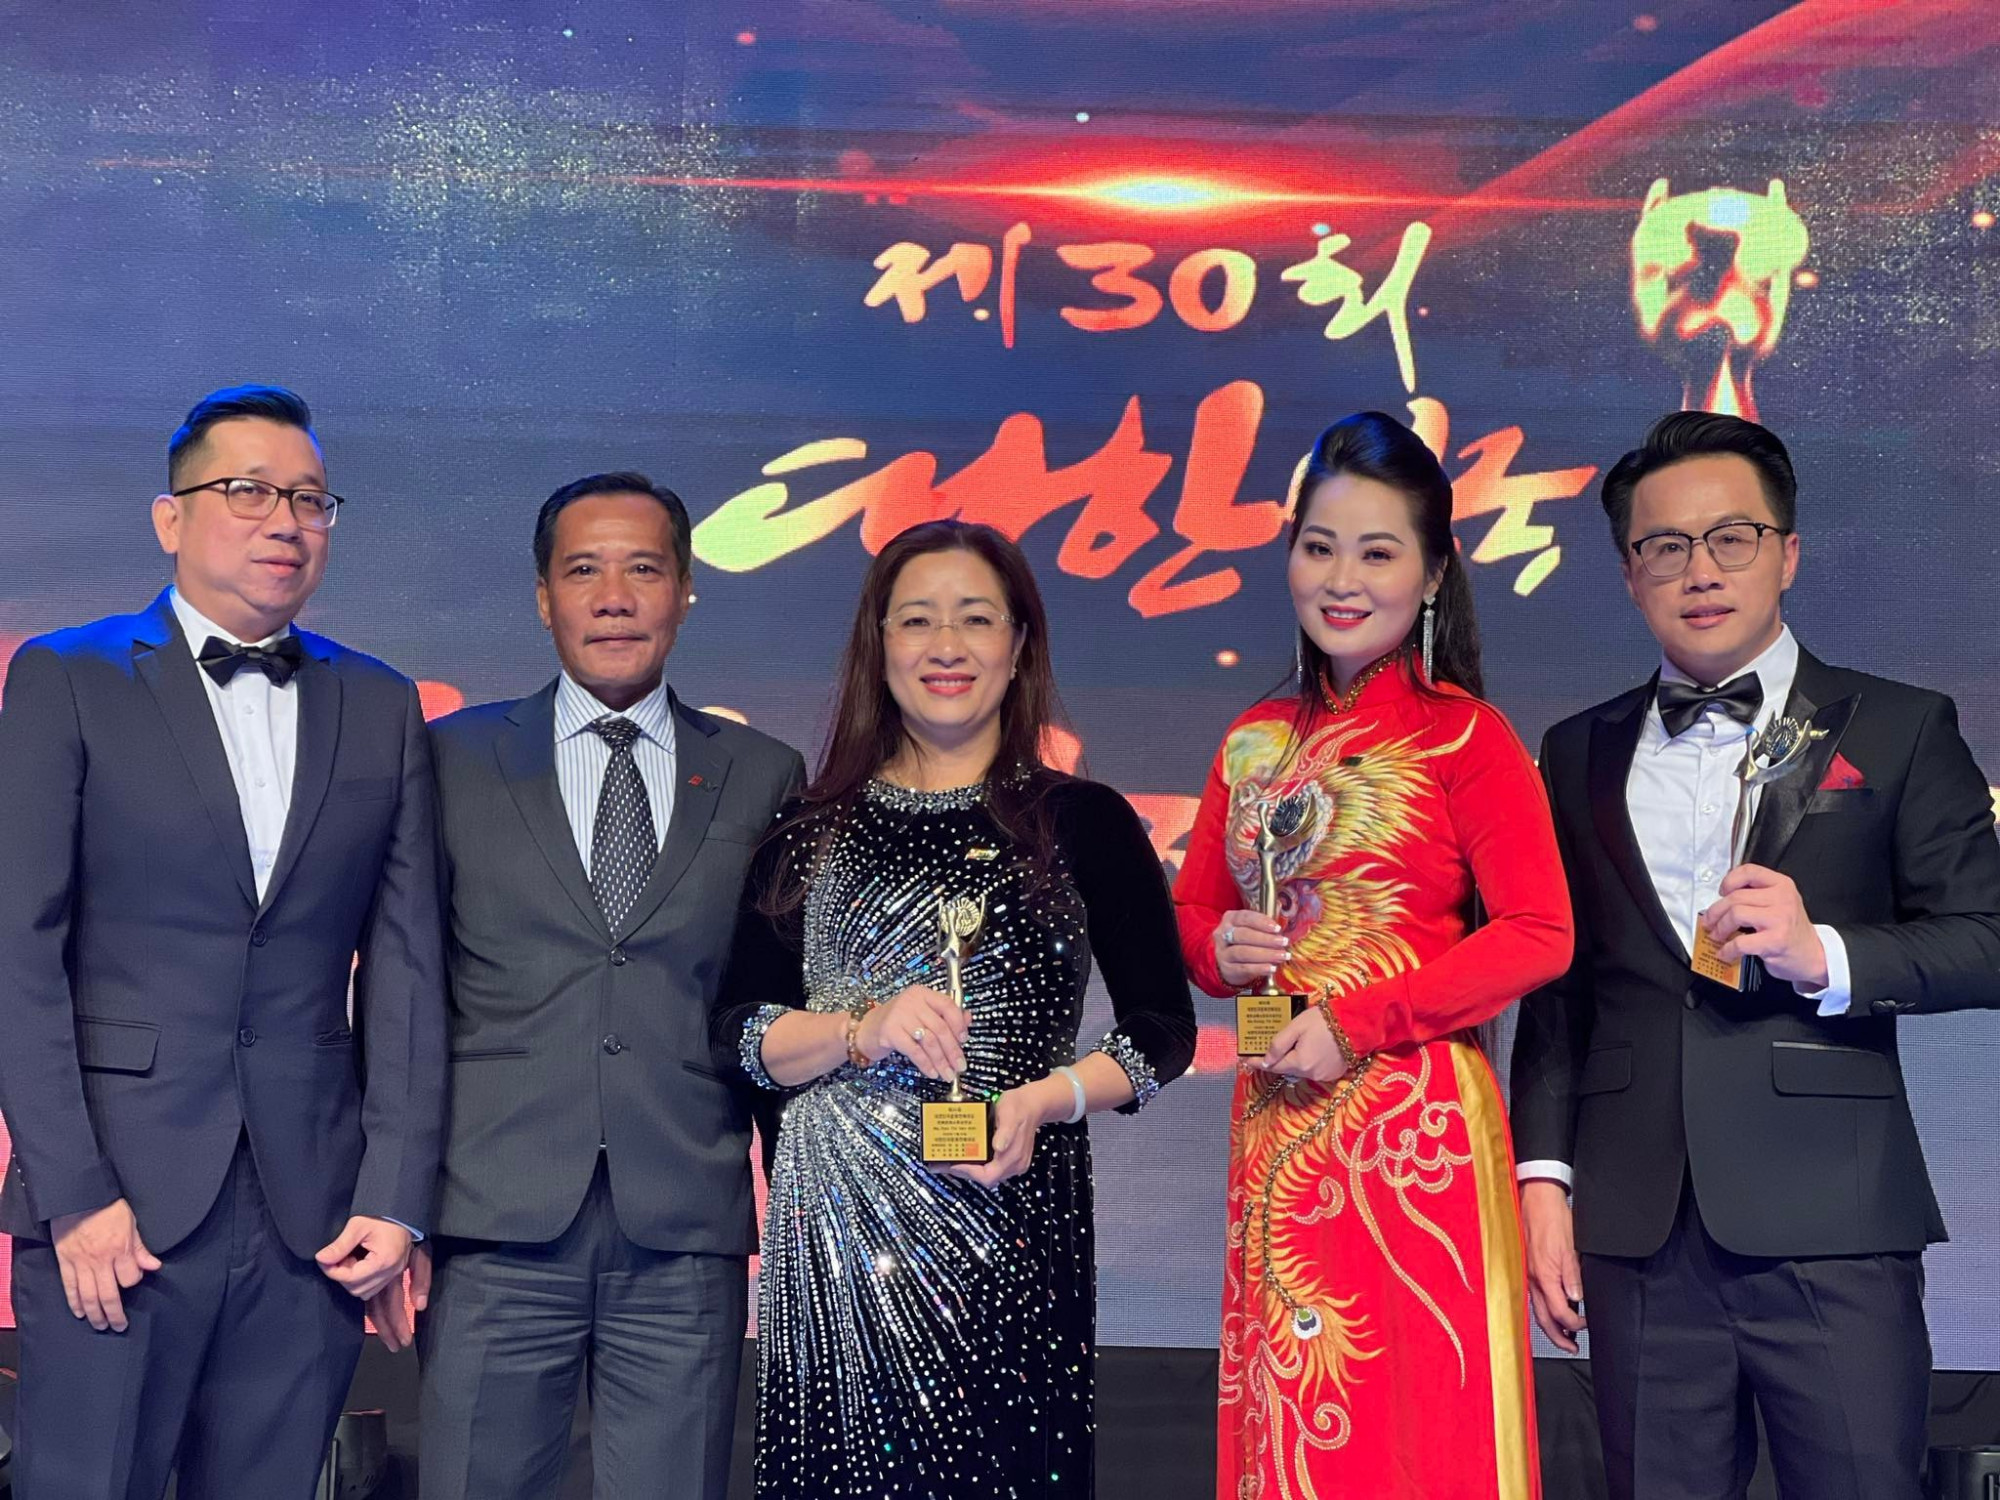 Từ phải sang: MC Tấn Tài, chuông vàng vọng cổ Ngọc Diễm, bà Vân Anh (trưởng ban Ca nhạc của HTV) nhận giải thưởng vào tối 30/11